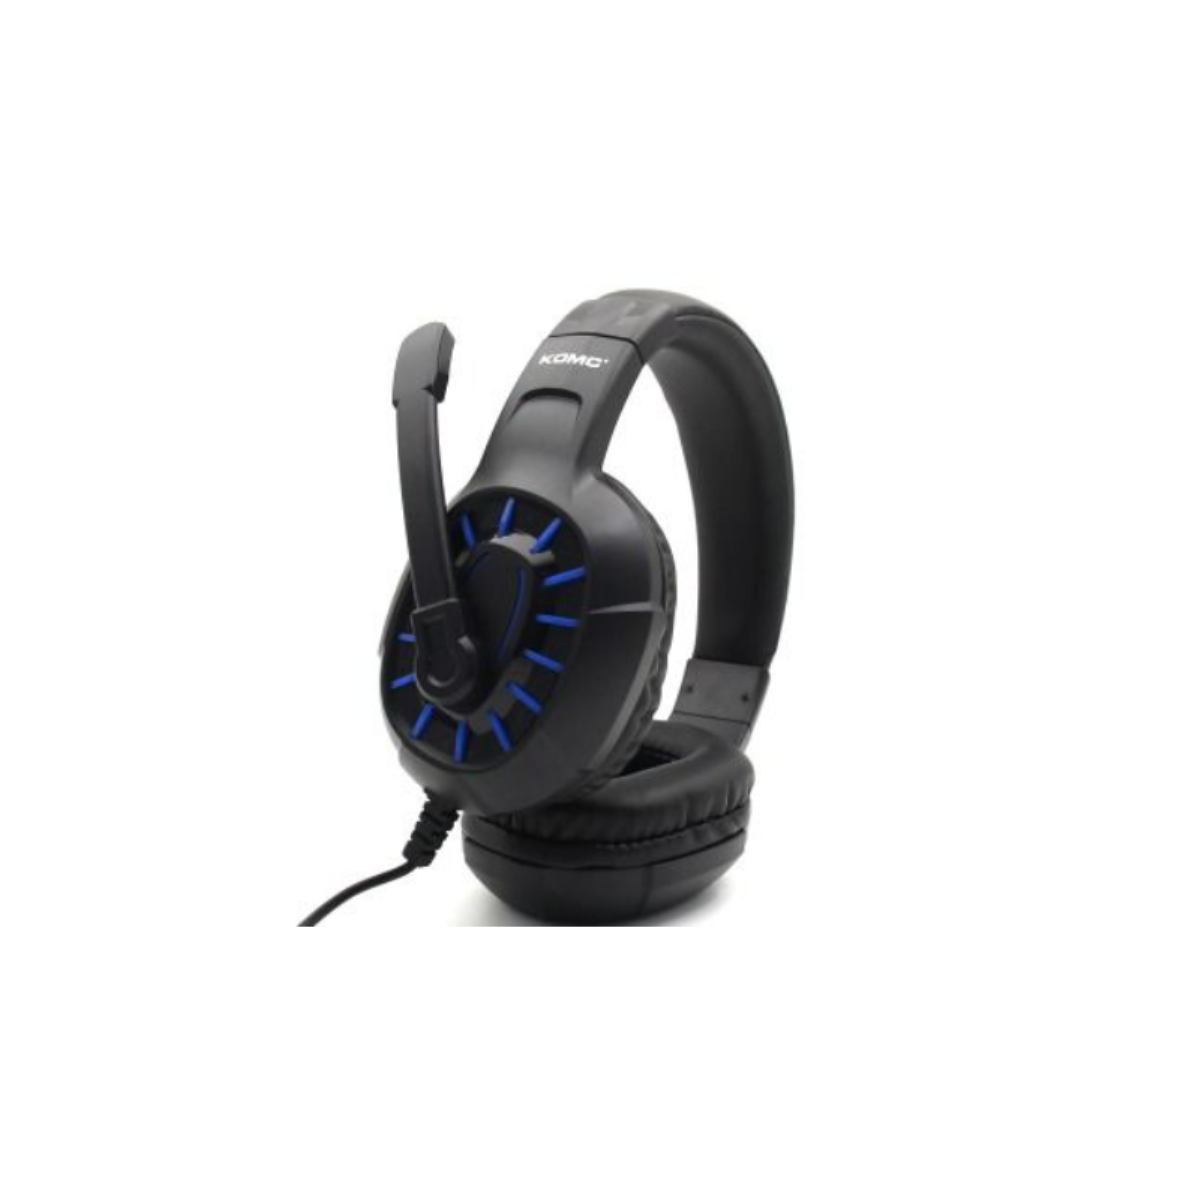 Auriculares con micrófono incorporado, cable 1.2 m. MOBILE+ MB-EP004 Color  Azul